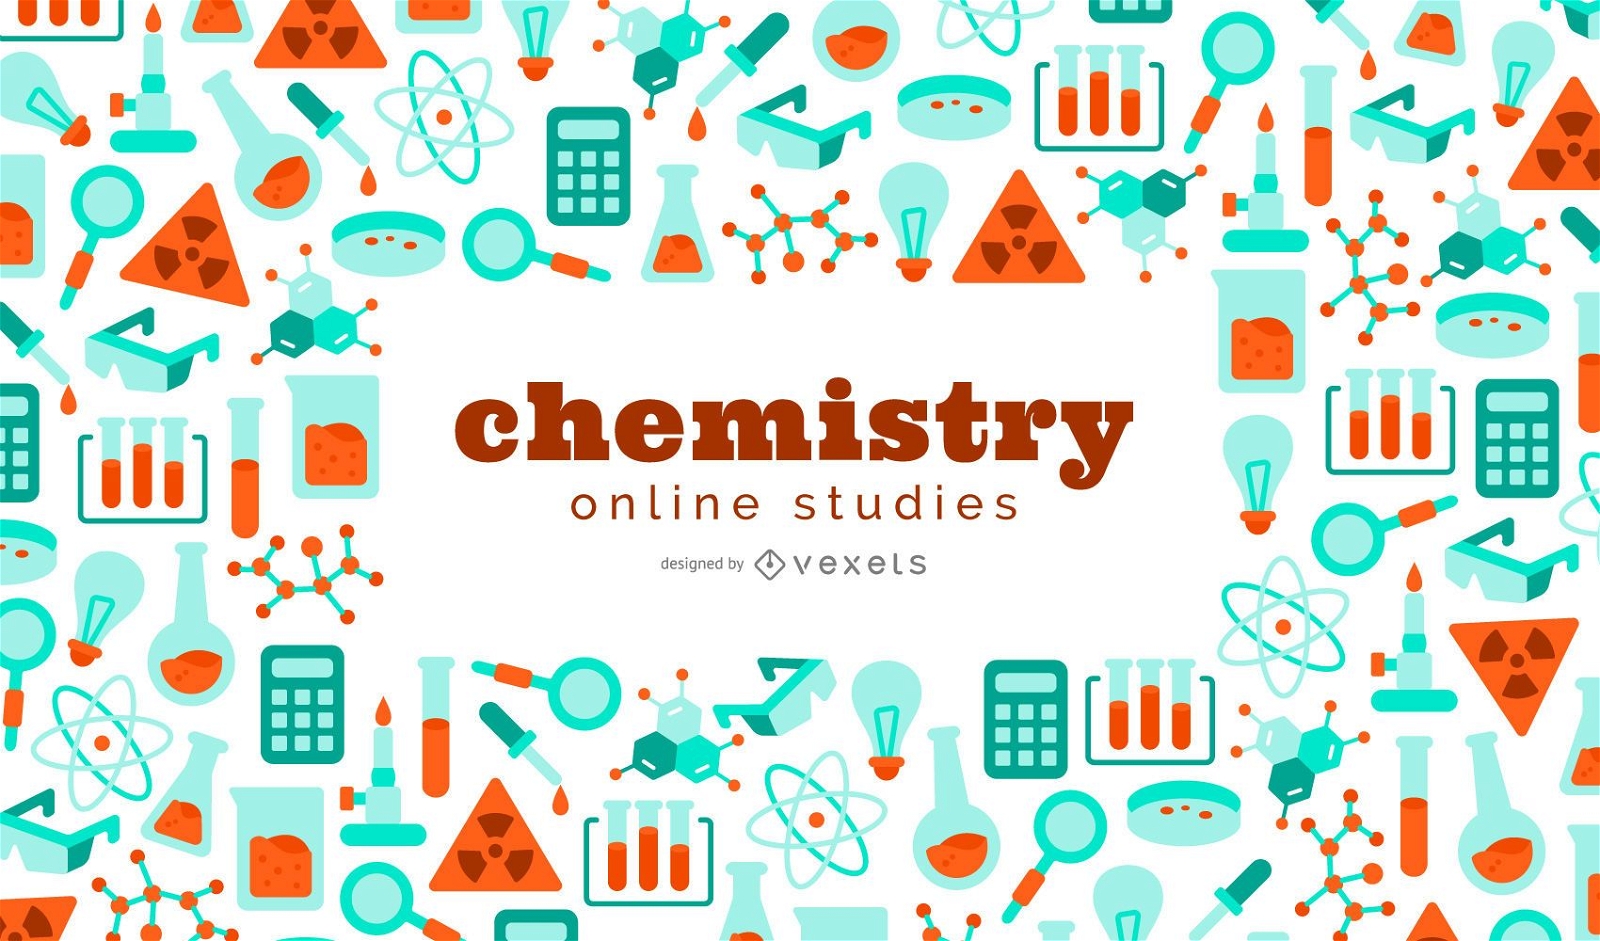 Histórico de estudos on-line de química